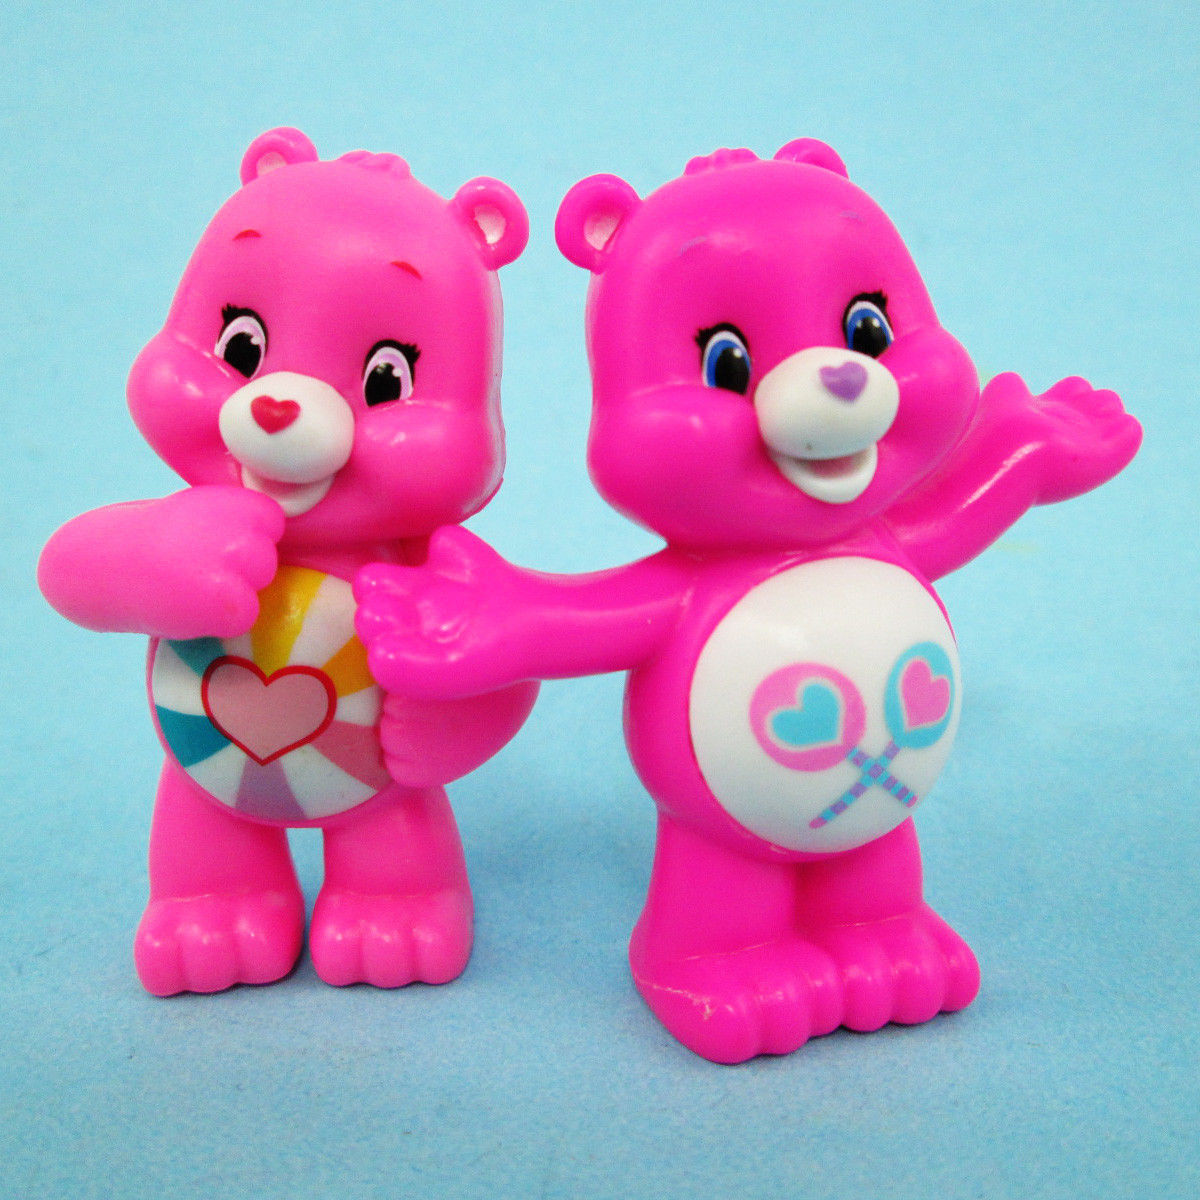 Care Bears Collectible Figure Series 5 Neon Fun Hopeful Heart Bear + Share Bear